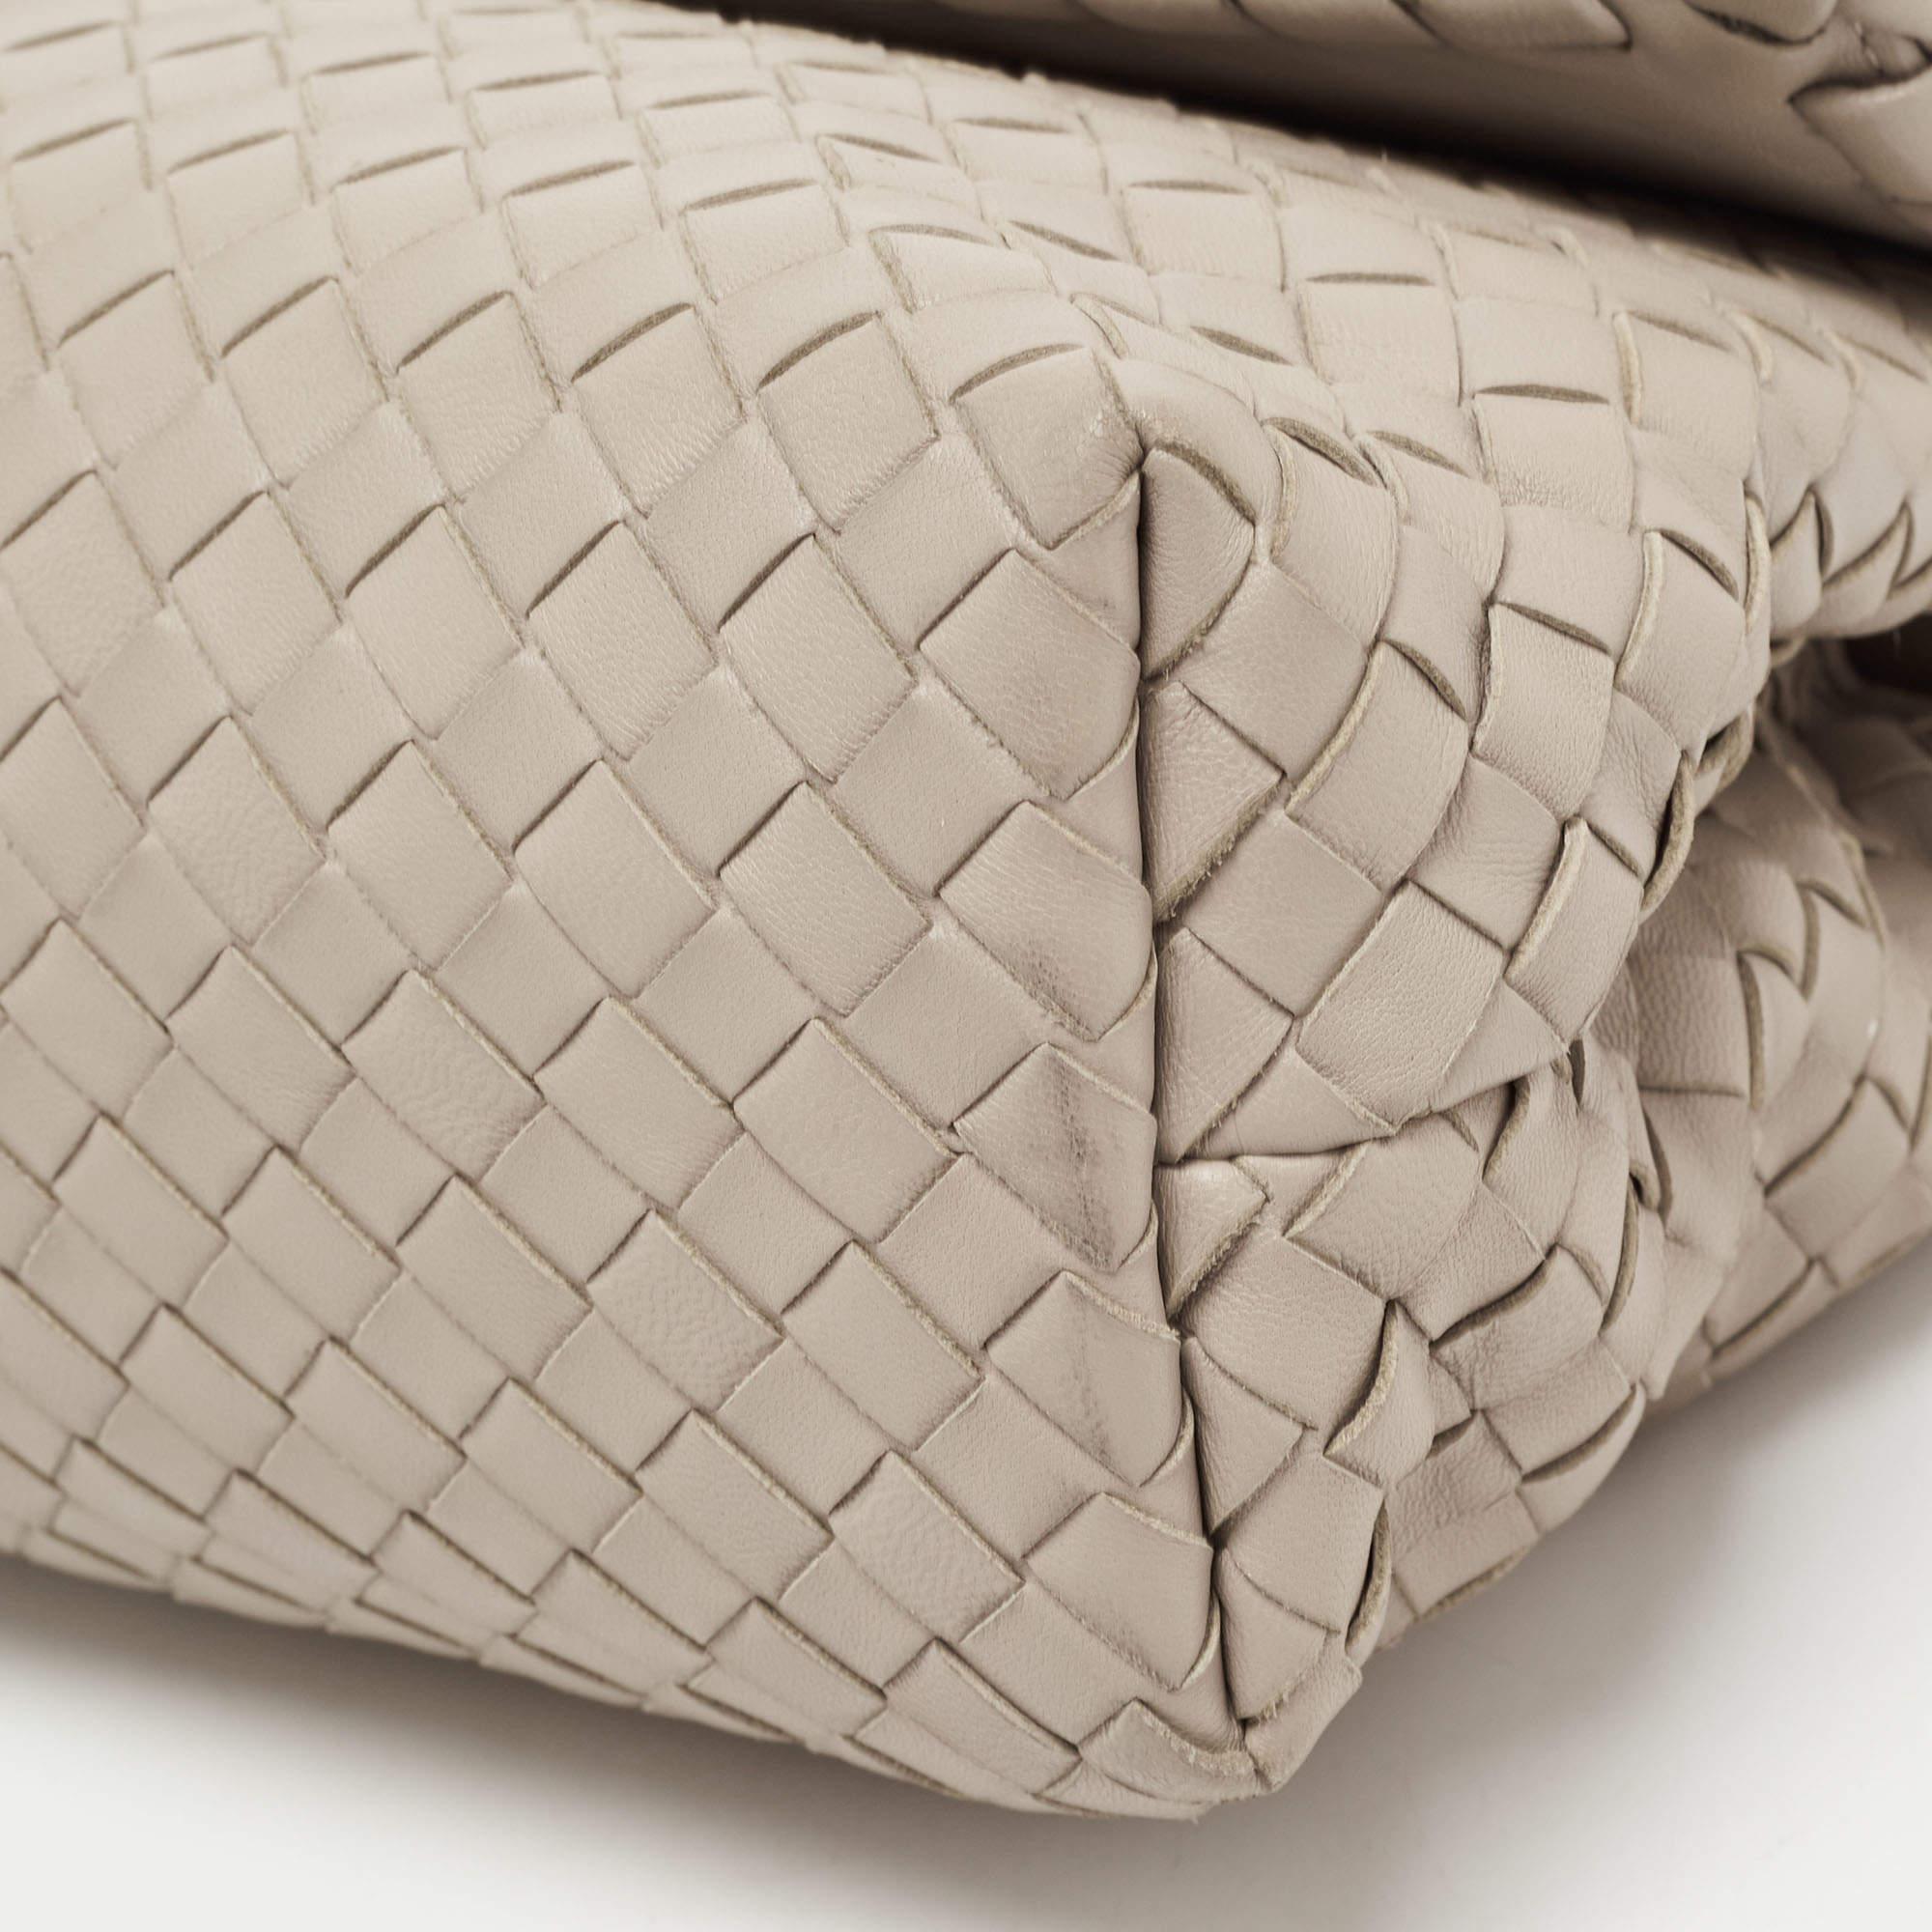 Bottega Veneta Beige Intrecciato Leather Olimpia Top Handle Bag 4